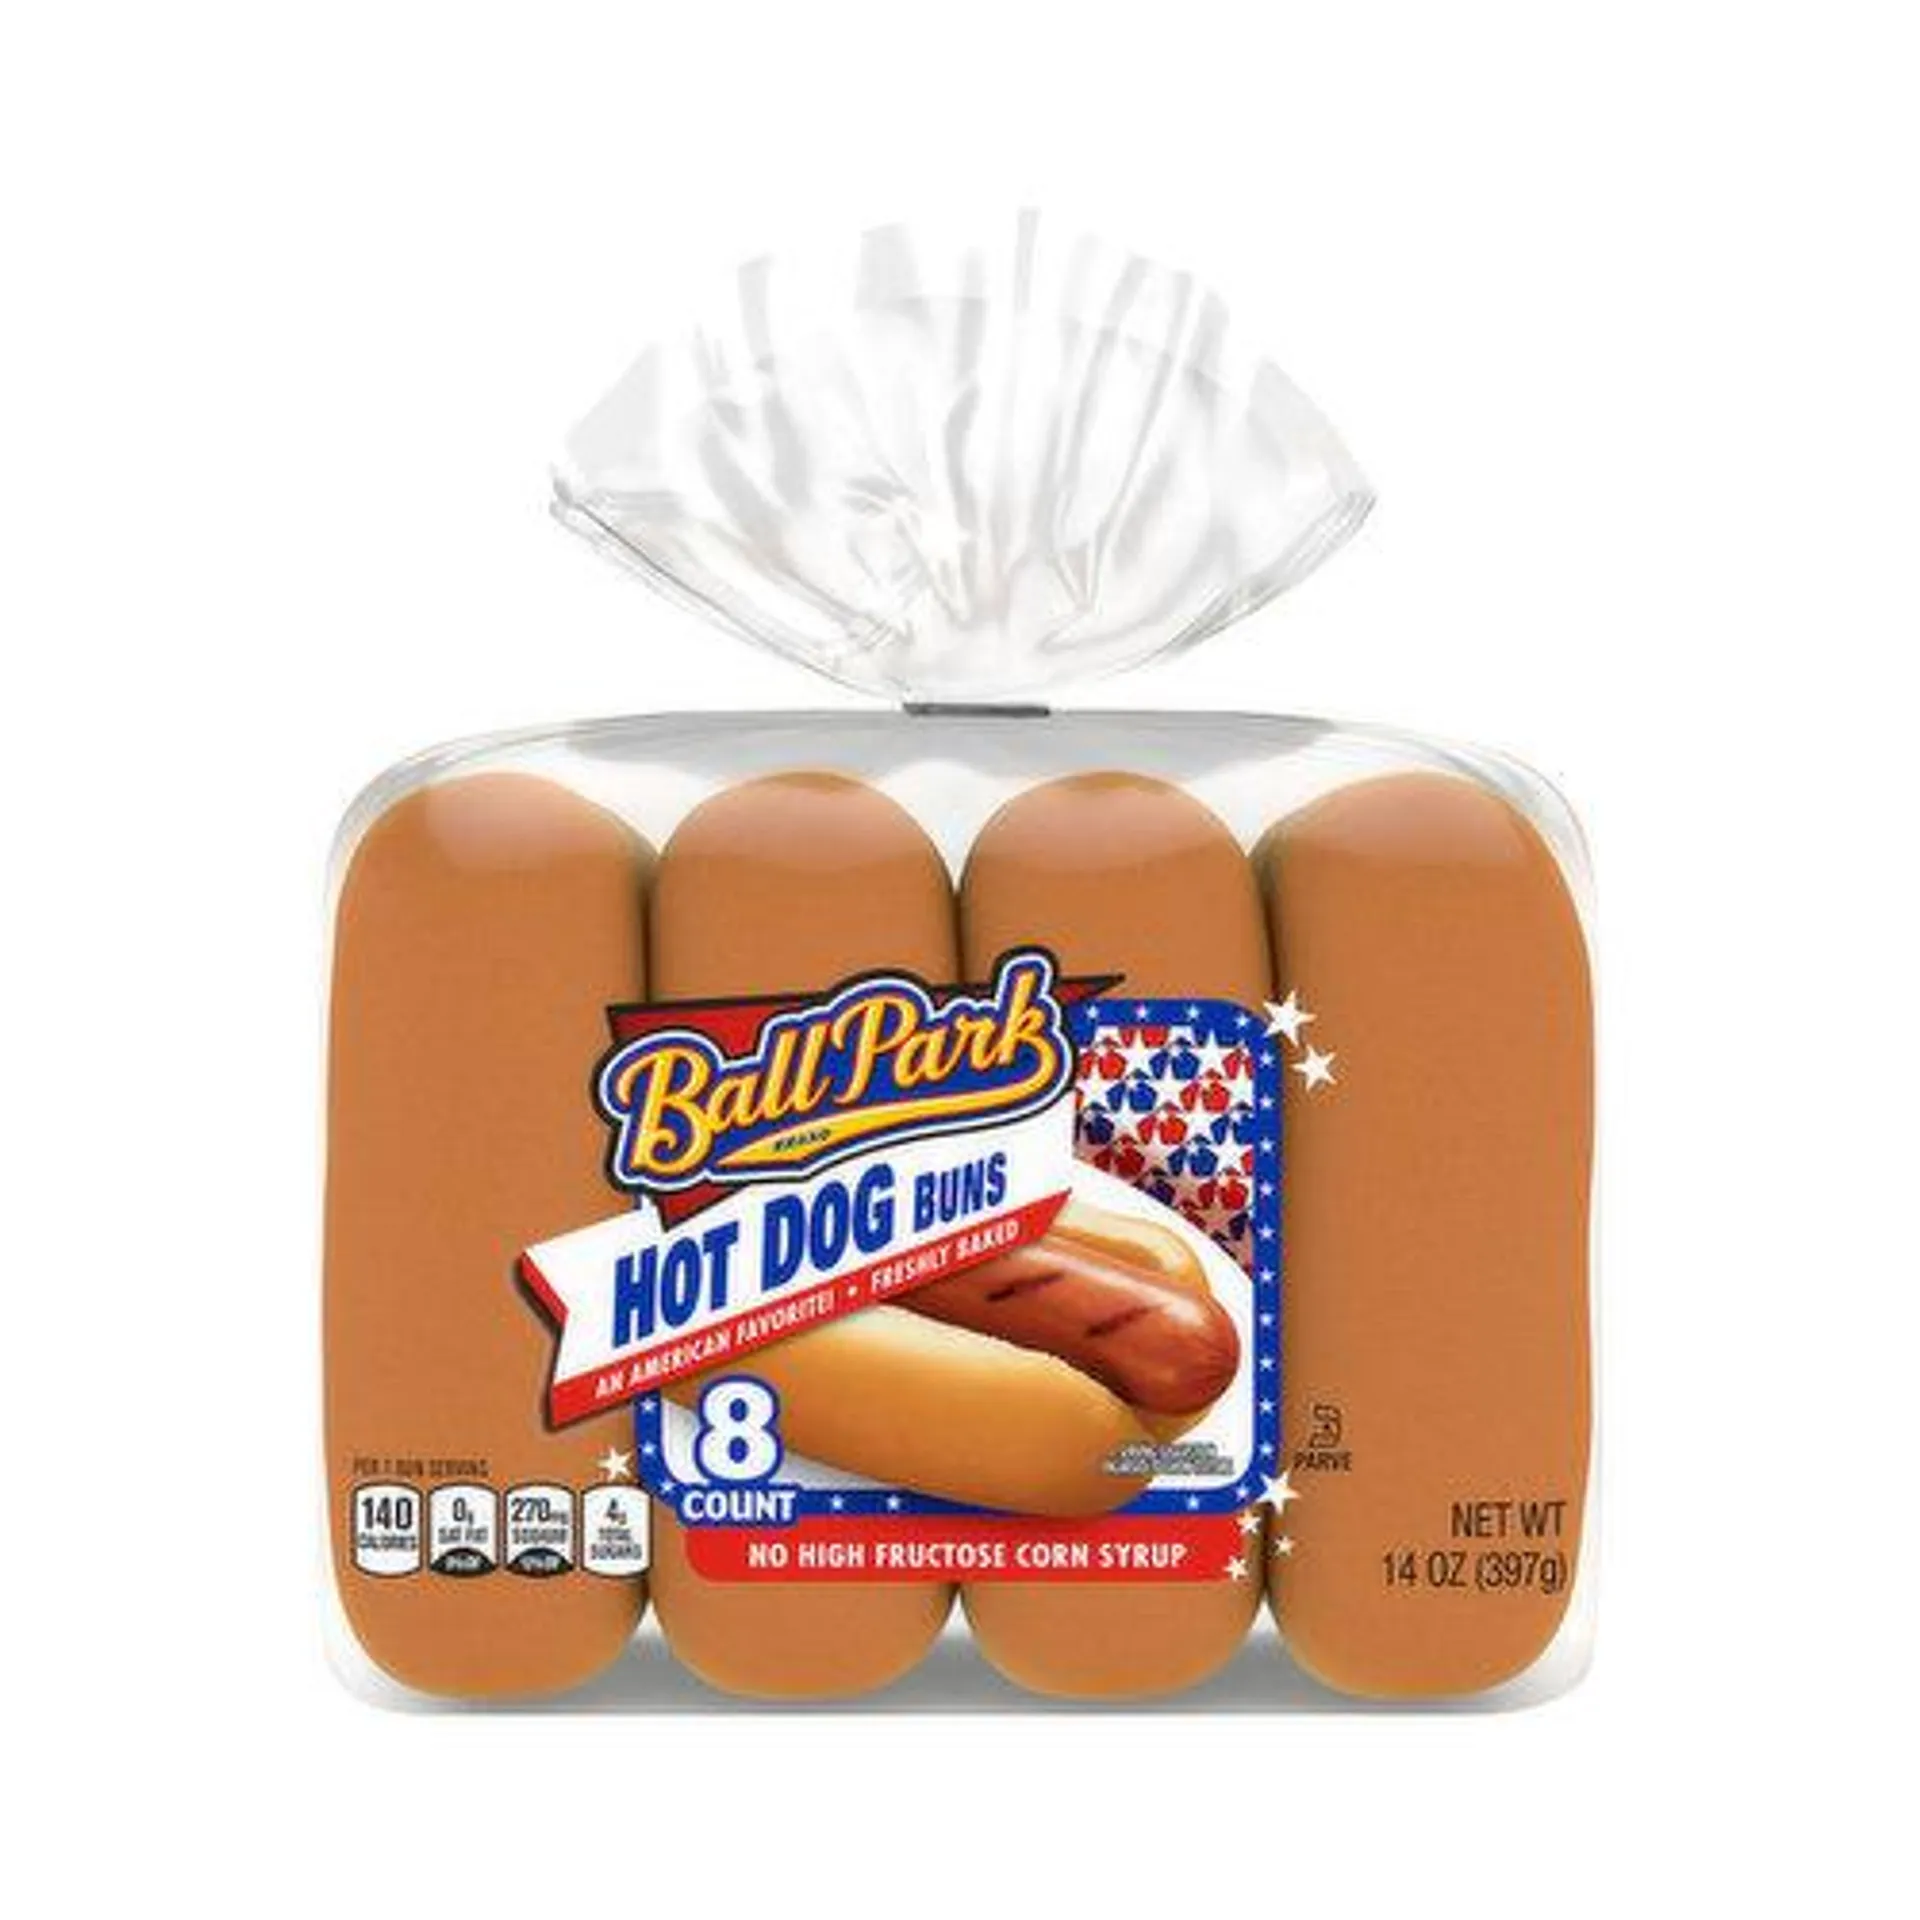 Ball Park Hot Dog Buns (8CT) - 14 Ounce